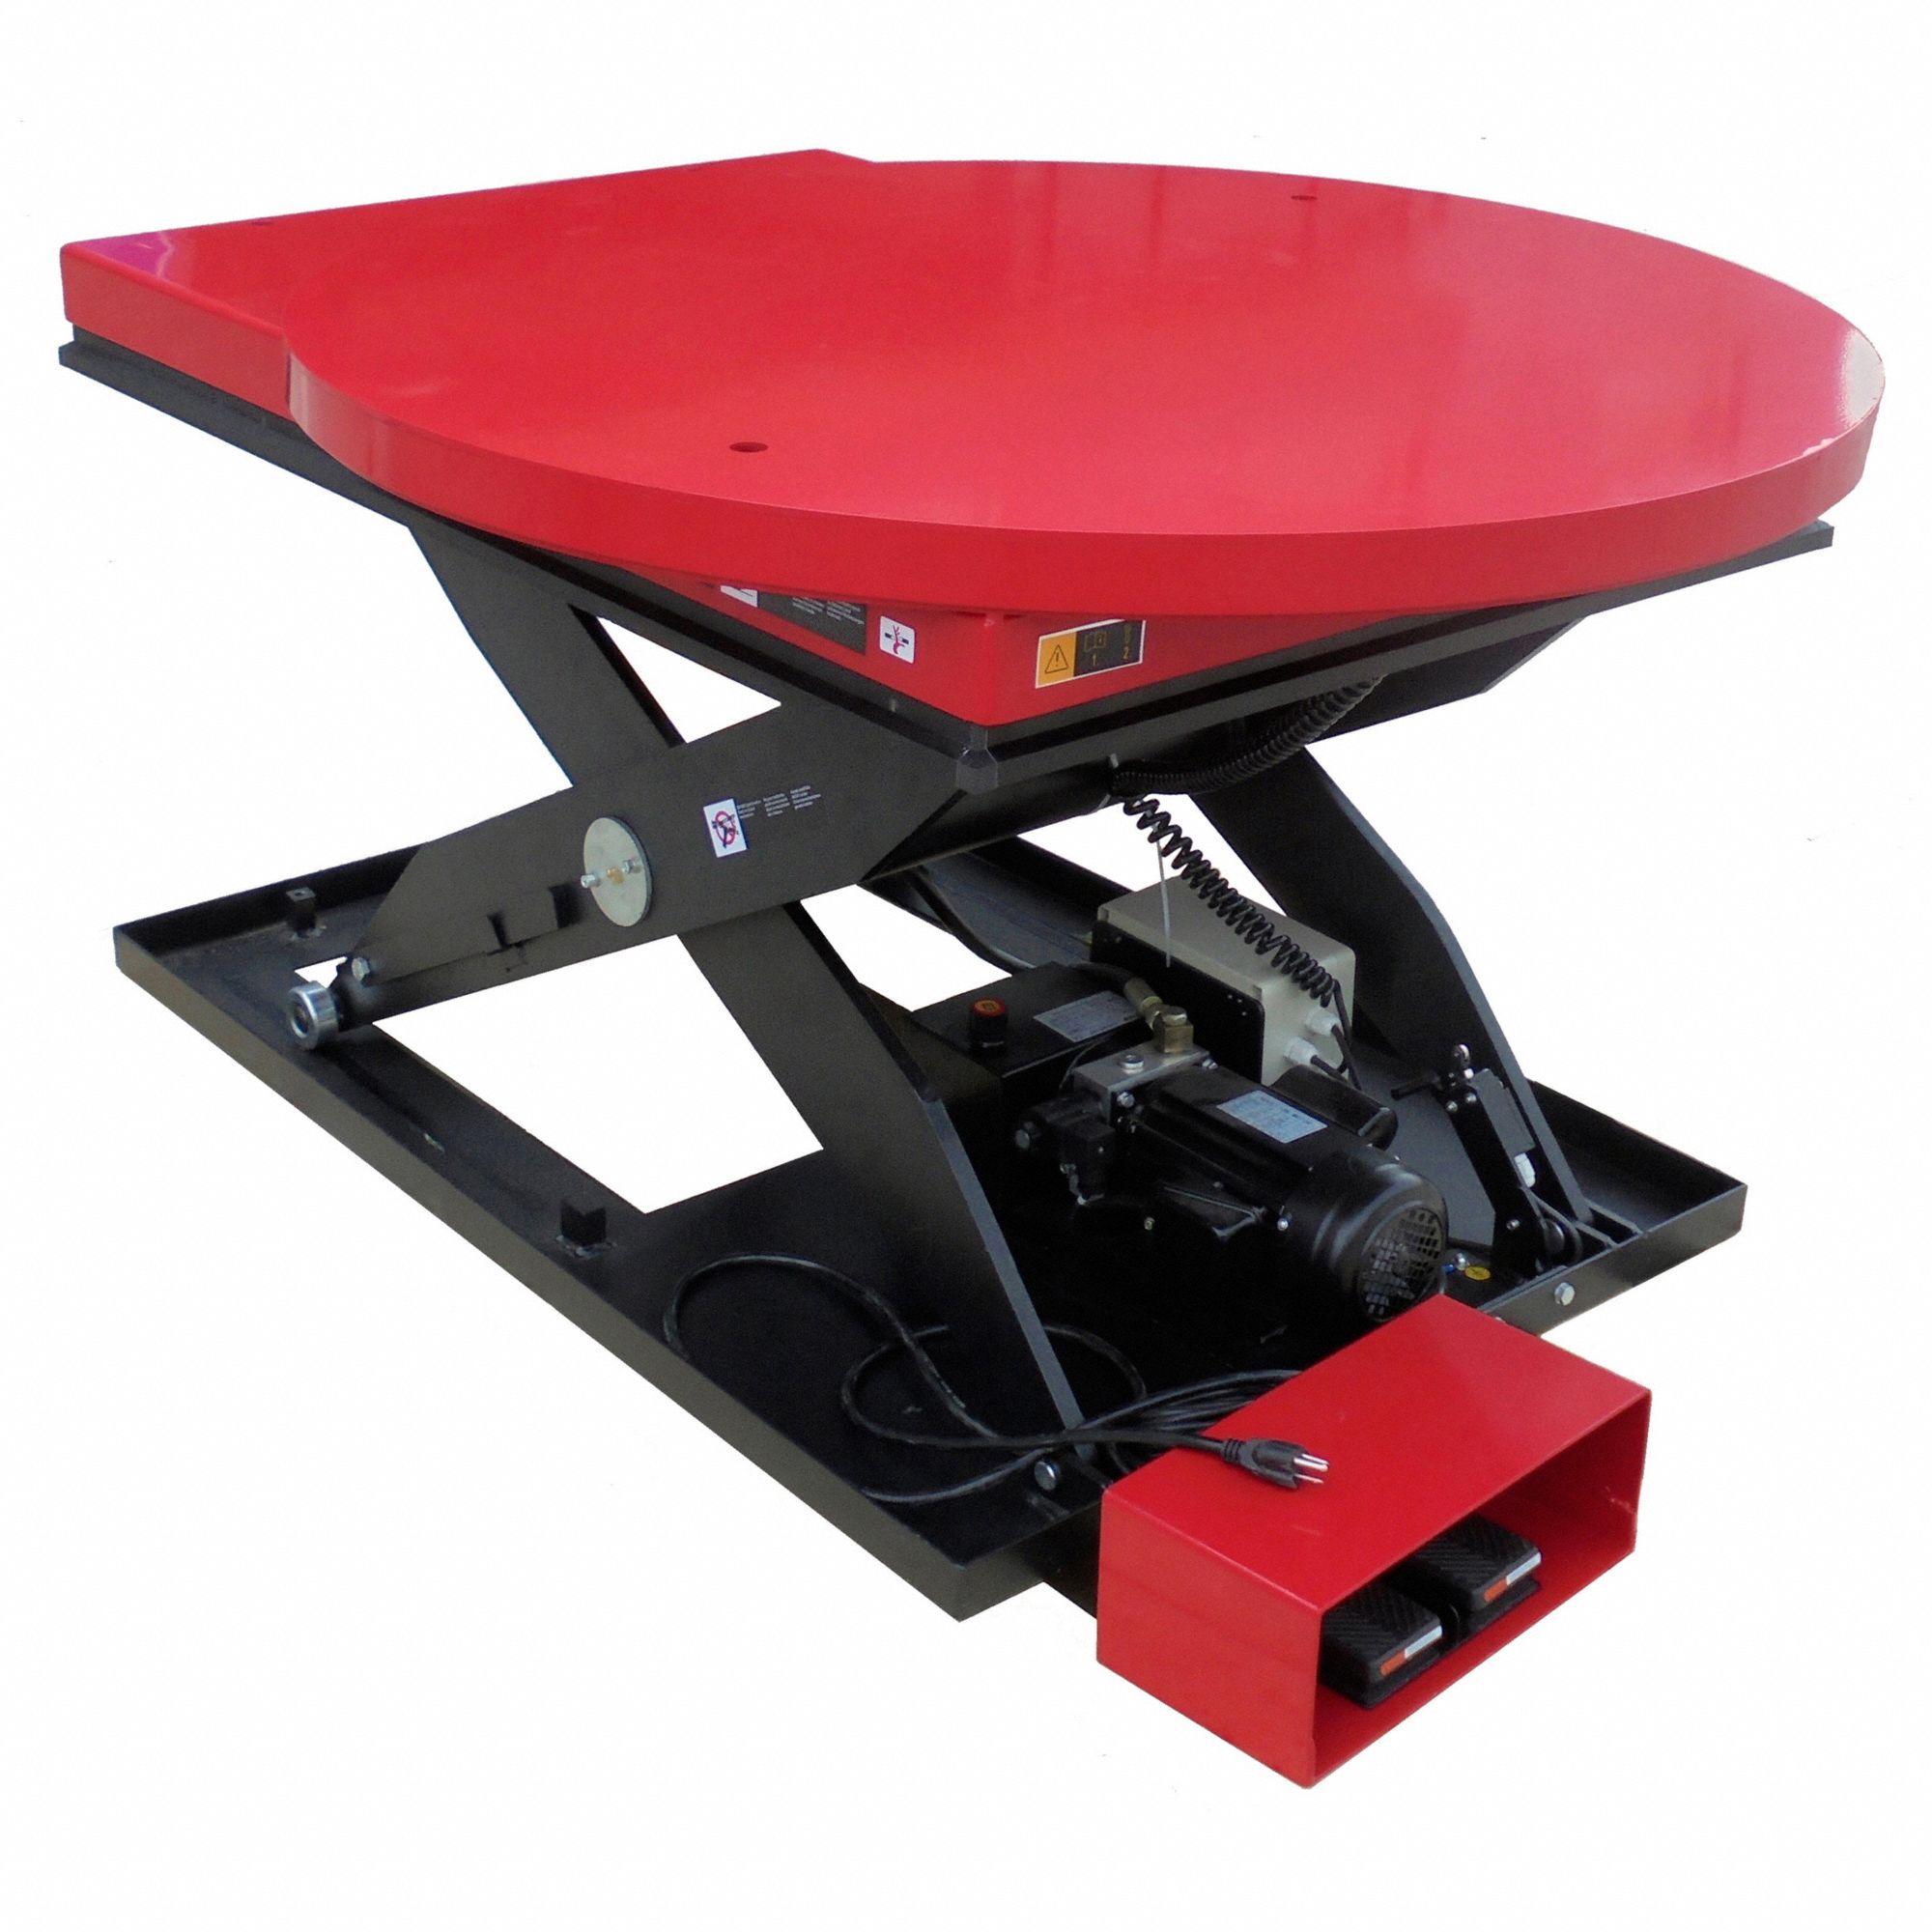 Dayton 60nh63 Scissor Lift Table 2000 Lb Load Capacity 2 497 33 Picclick